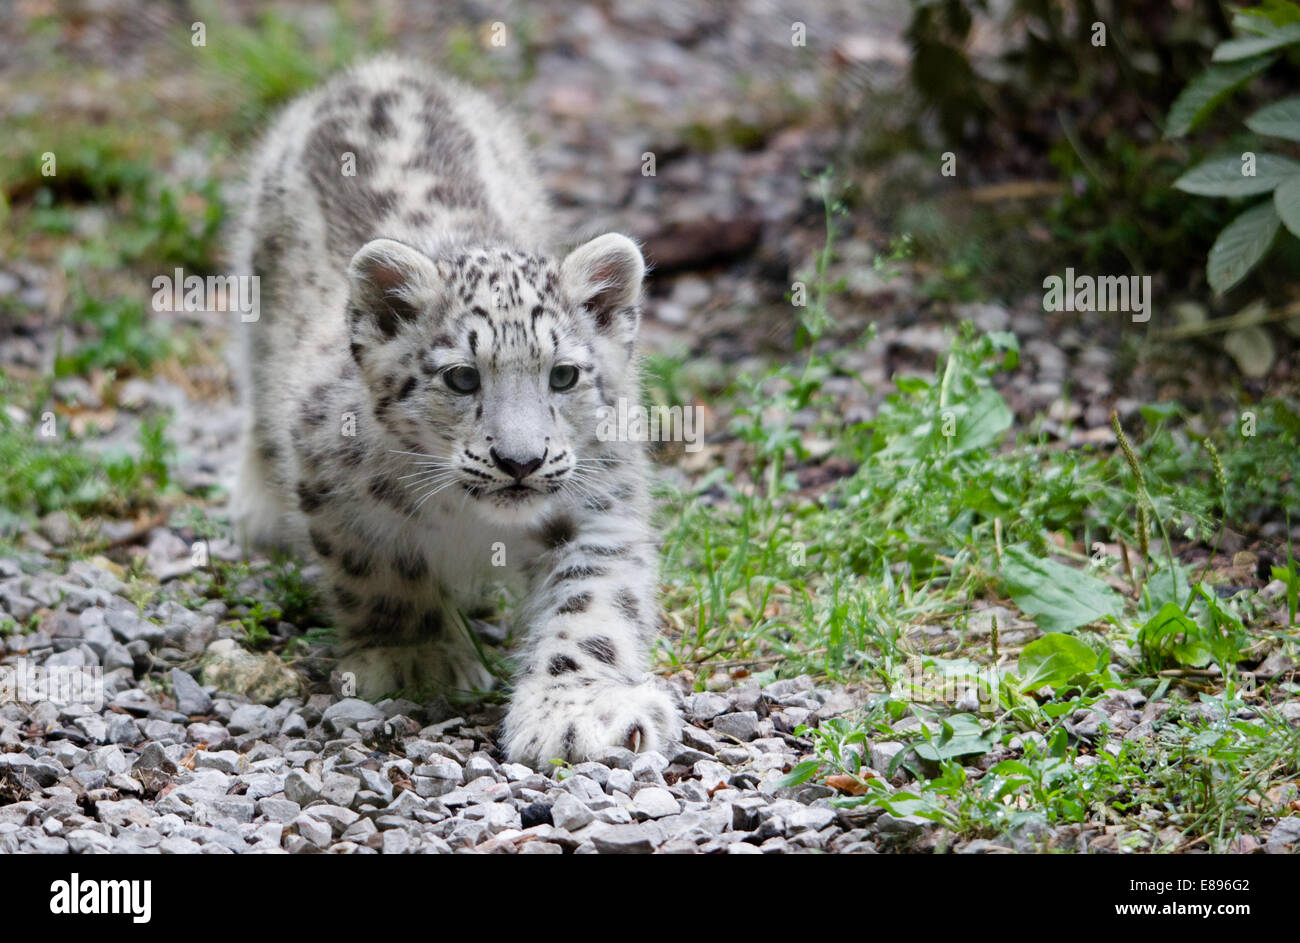 Ein einsamer snow leopard Cub versuchsweise Entdecker der Gegend. Stockfoto